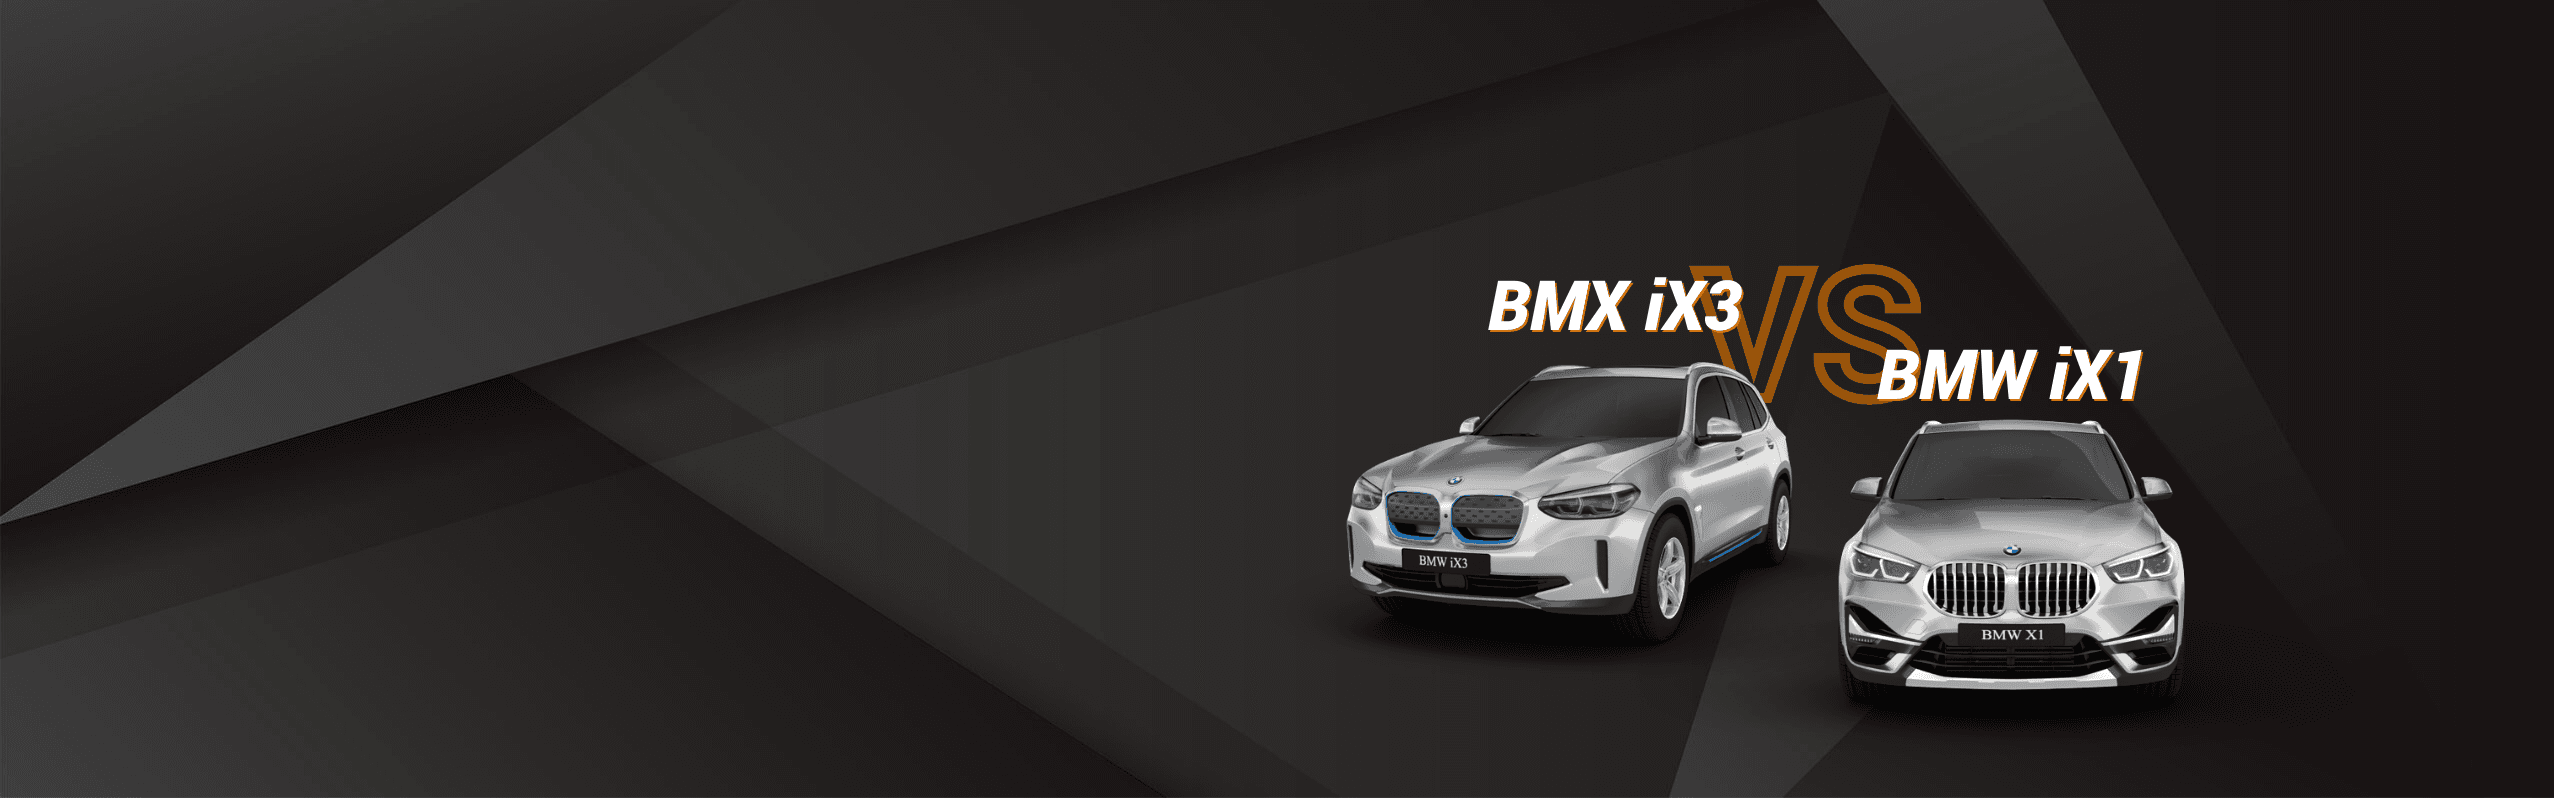 Vergleich BMW iX1 und BMW iX3